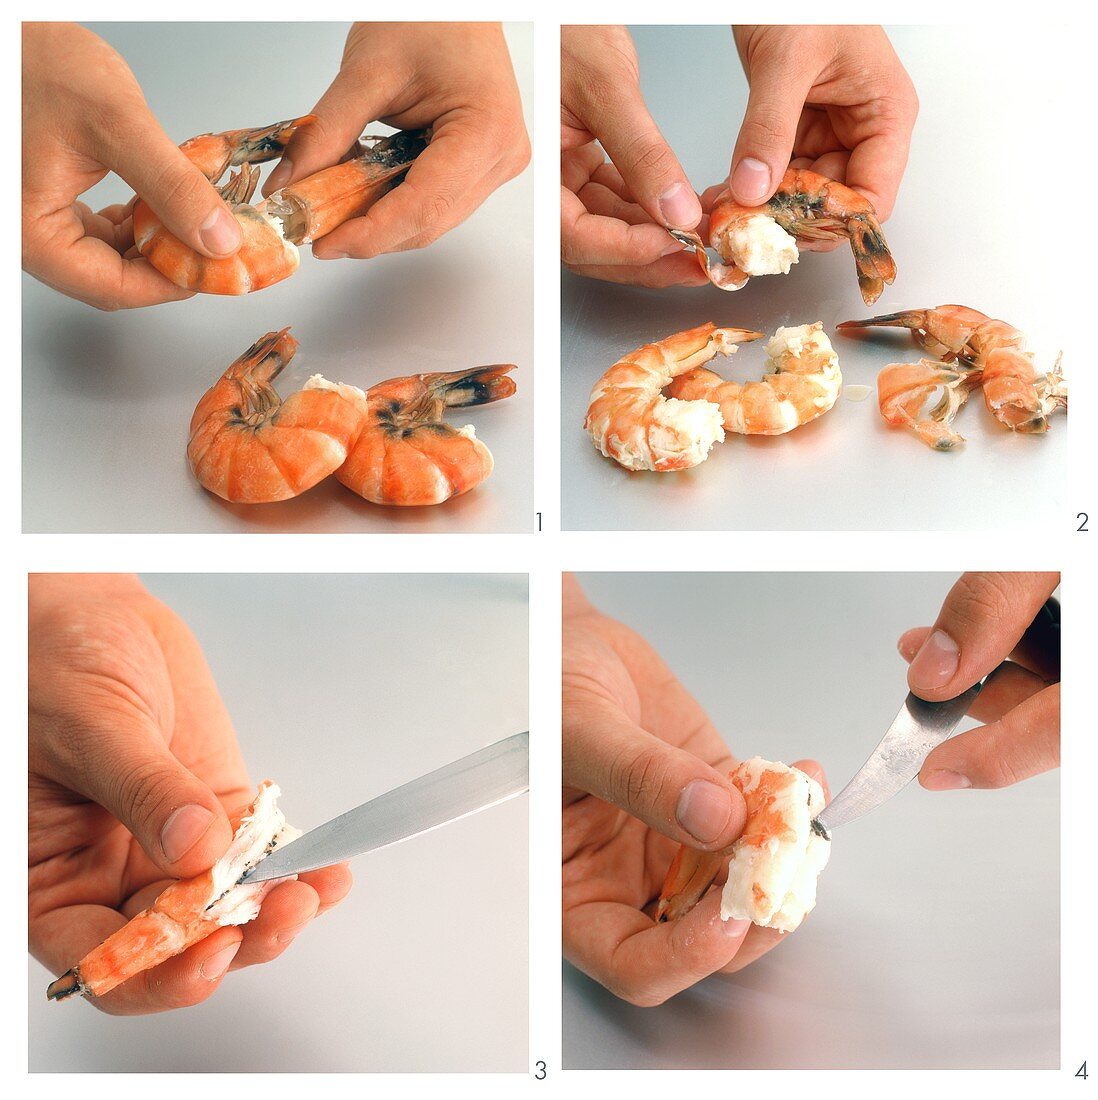 Shelling shrimps